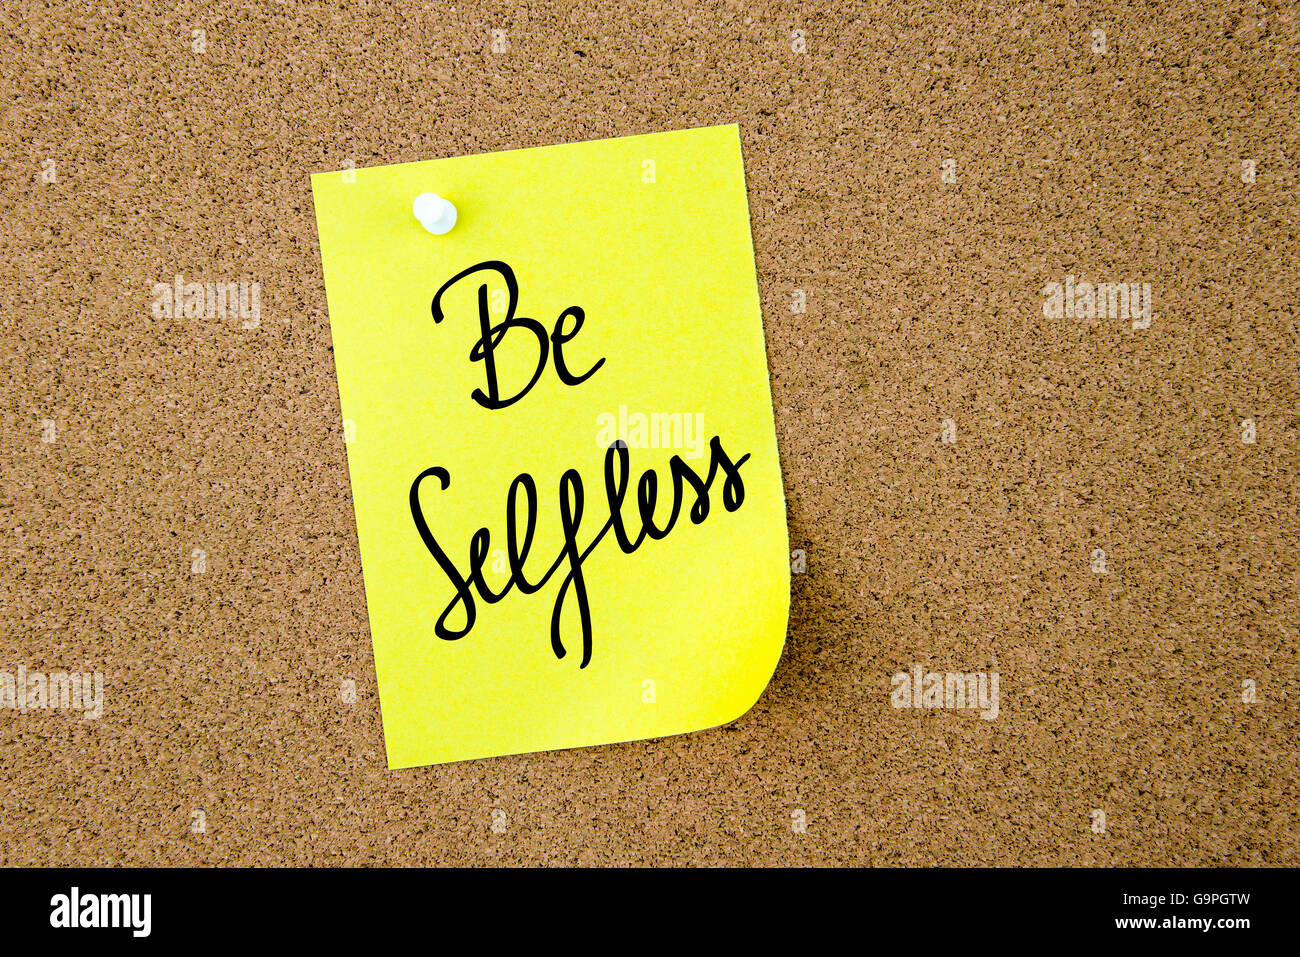 Kopieren Sie Selfless geschrieben auf gelbem Papier Hinweis auf Pinnwand mit weißen Reißzwecken festgesteckt werden, Speicherplatz Stockfoto